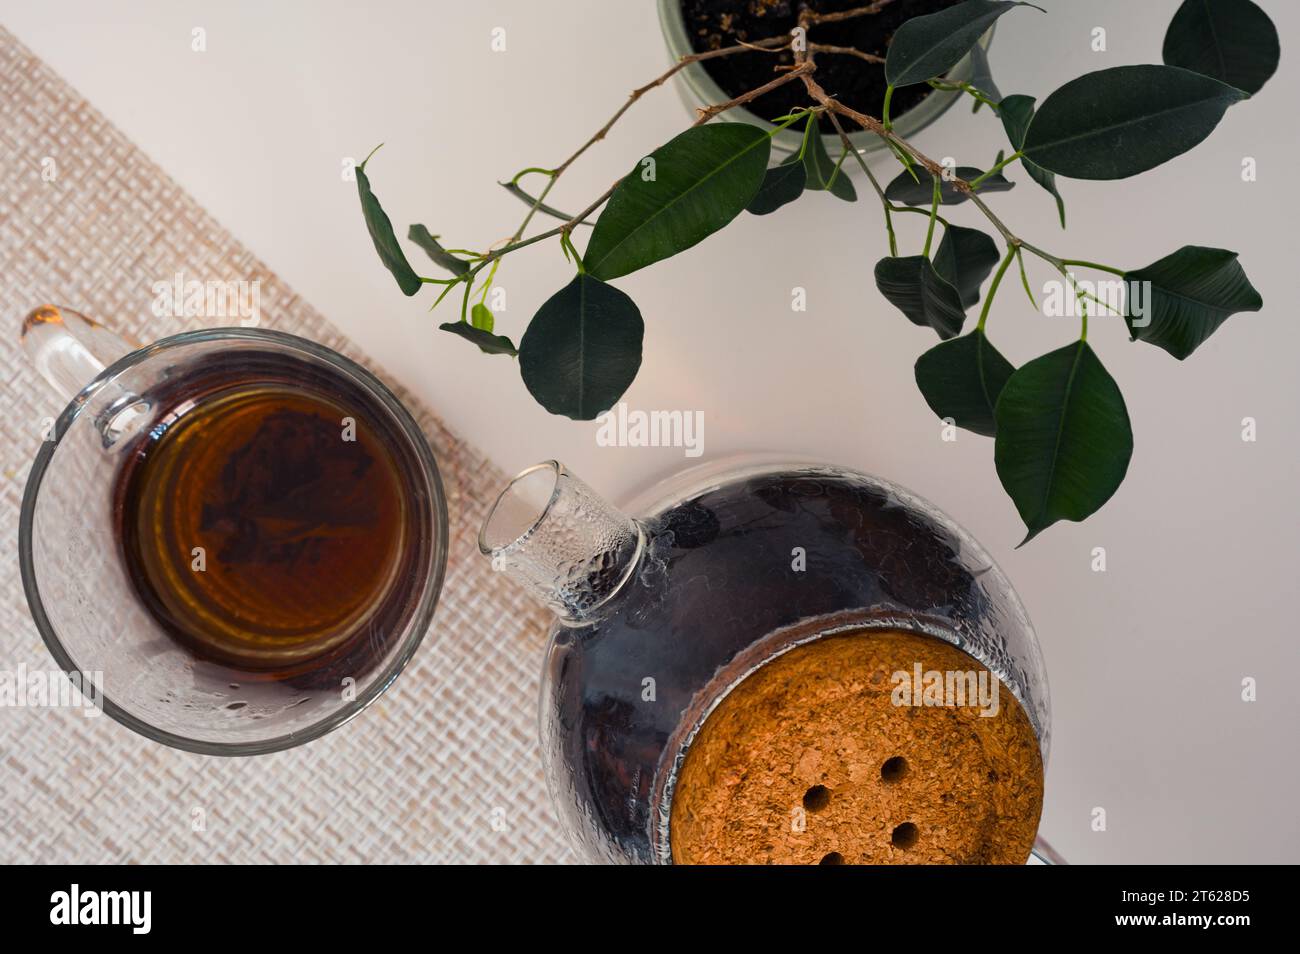 Thé noir dans une tasse en verre et théière en verre sur une serviette et plante verte sur une table blanche du haut Banque D'Images